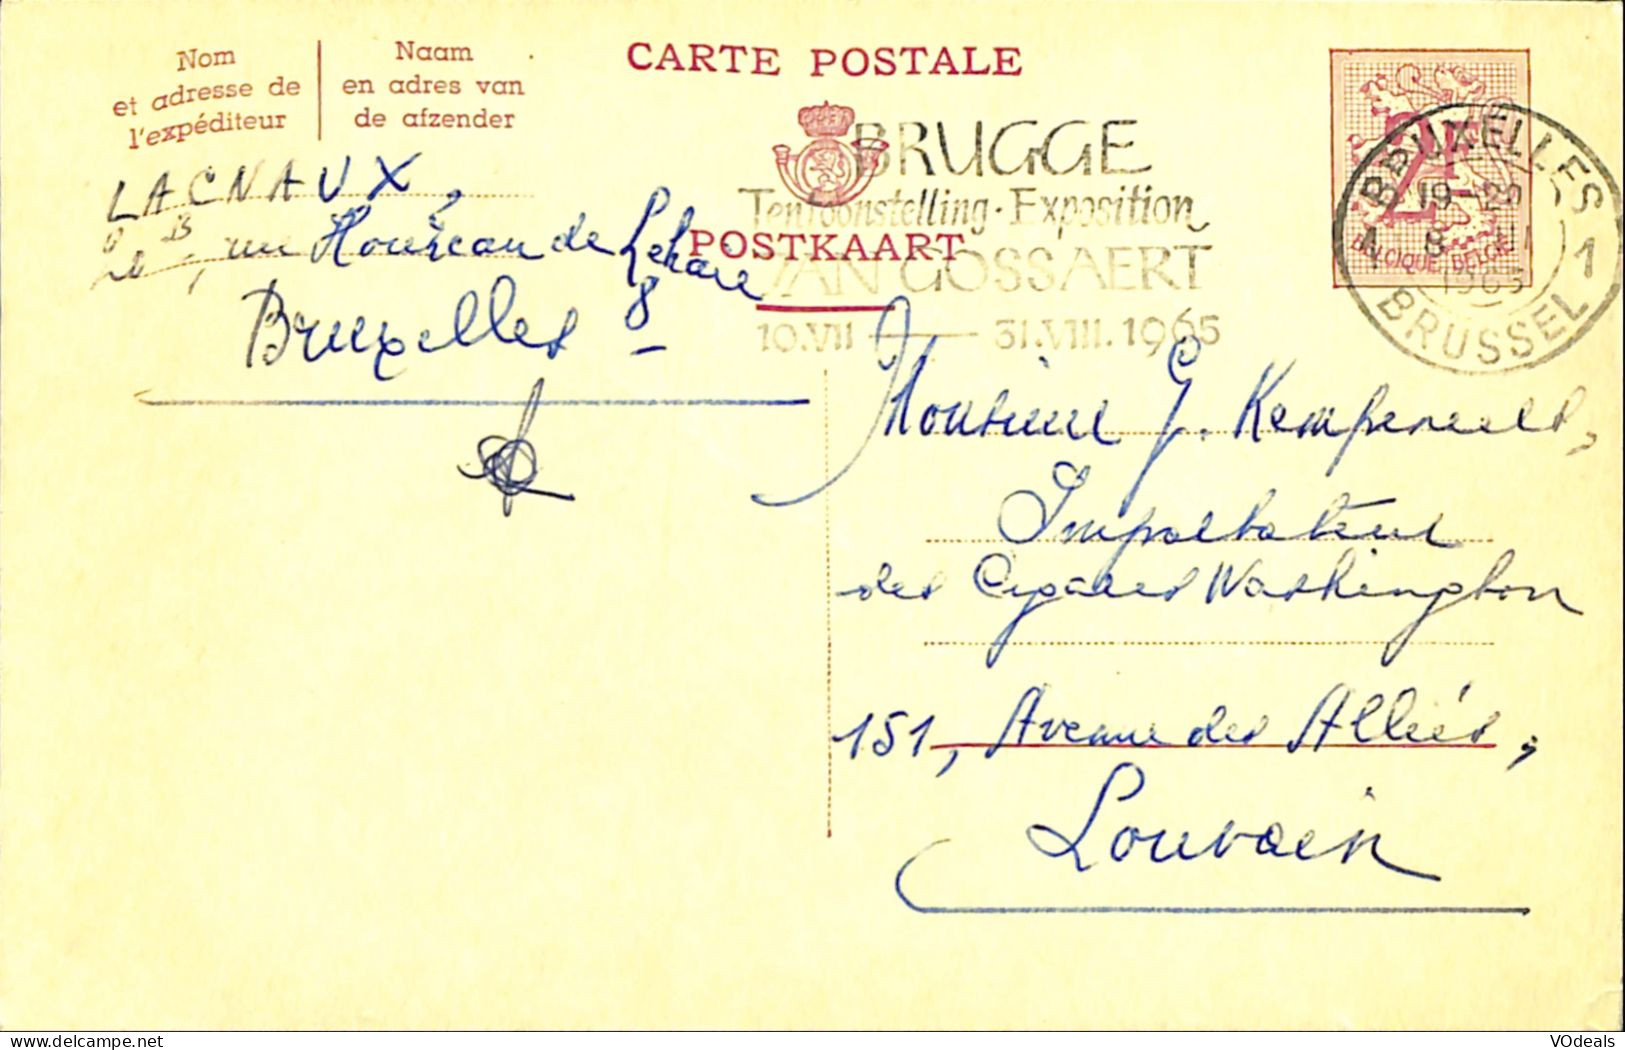 Belgique - Carte Postale - Entier Postal - 1965 - Bruxelles à Louvain - 2 Francs - Briefkaarten 1951-..